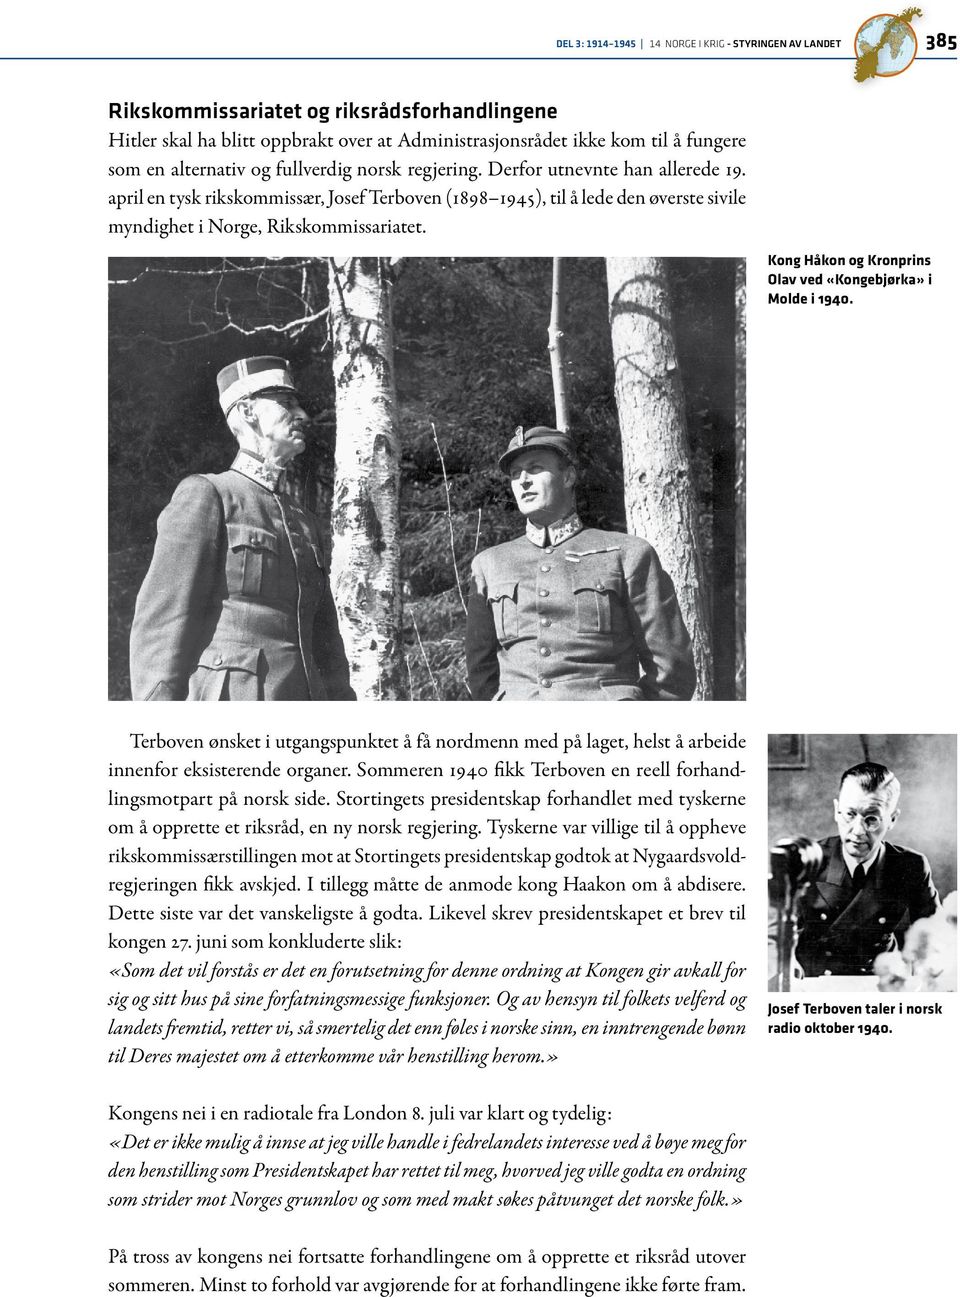 Kong Håkon og Kronprins Olav ved «Kongebjørka» i Molde i 1940. Terboven ønsket i utgangspunktet å få nordmenn med på laget, helst å arbeide innenfor eksisterende organer.